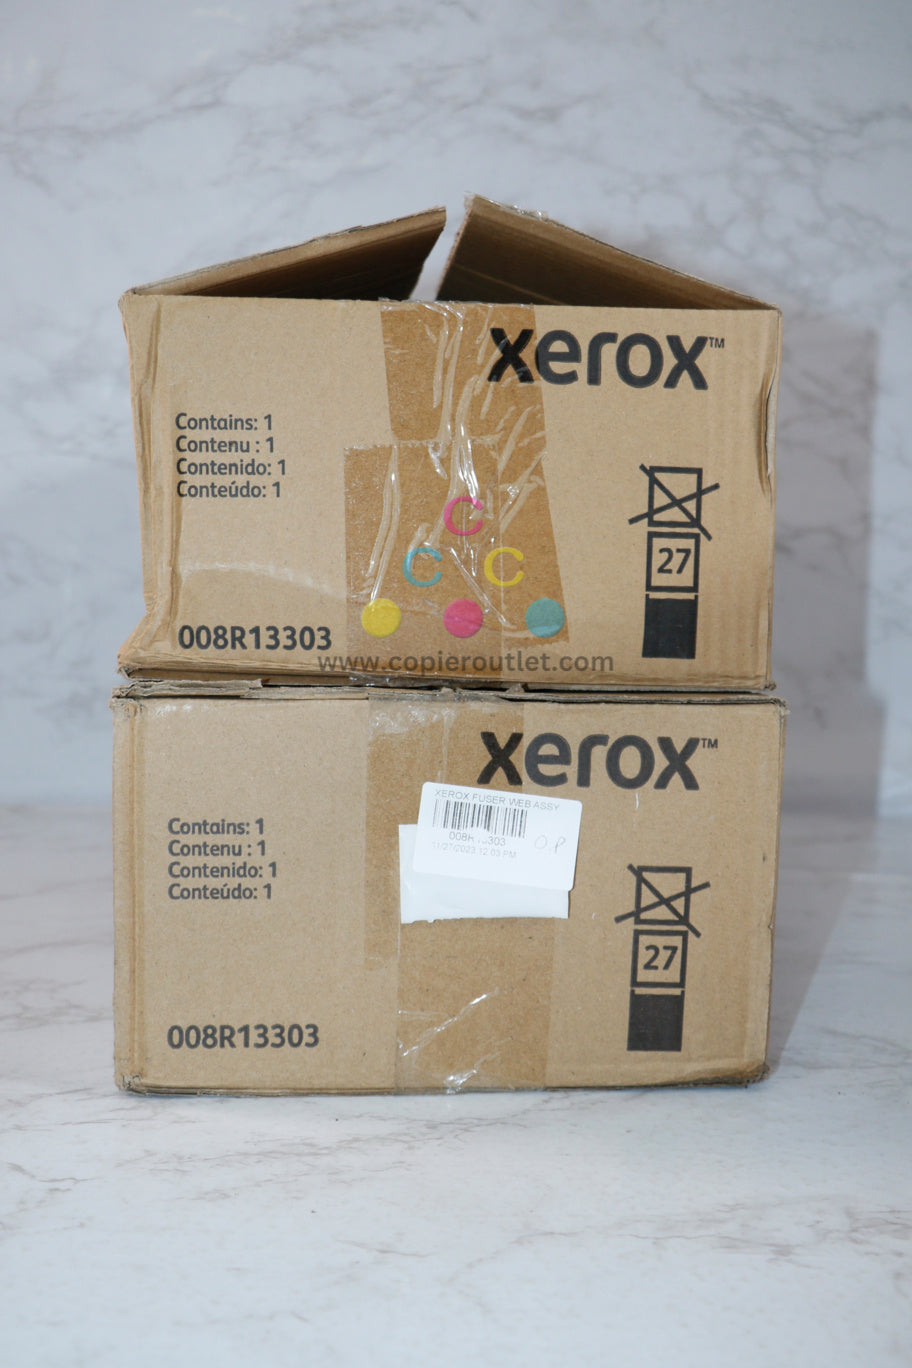 2 Open Xerox 4110,4112,4127,4590,D110P,D125,D136 Fuser Cleaning Cartridges 008R13303